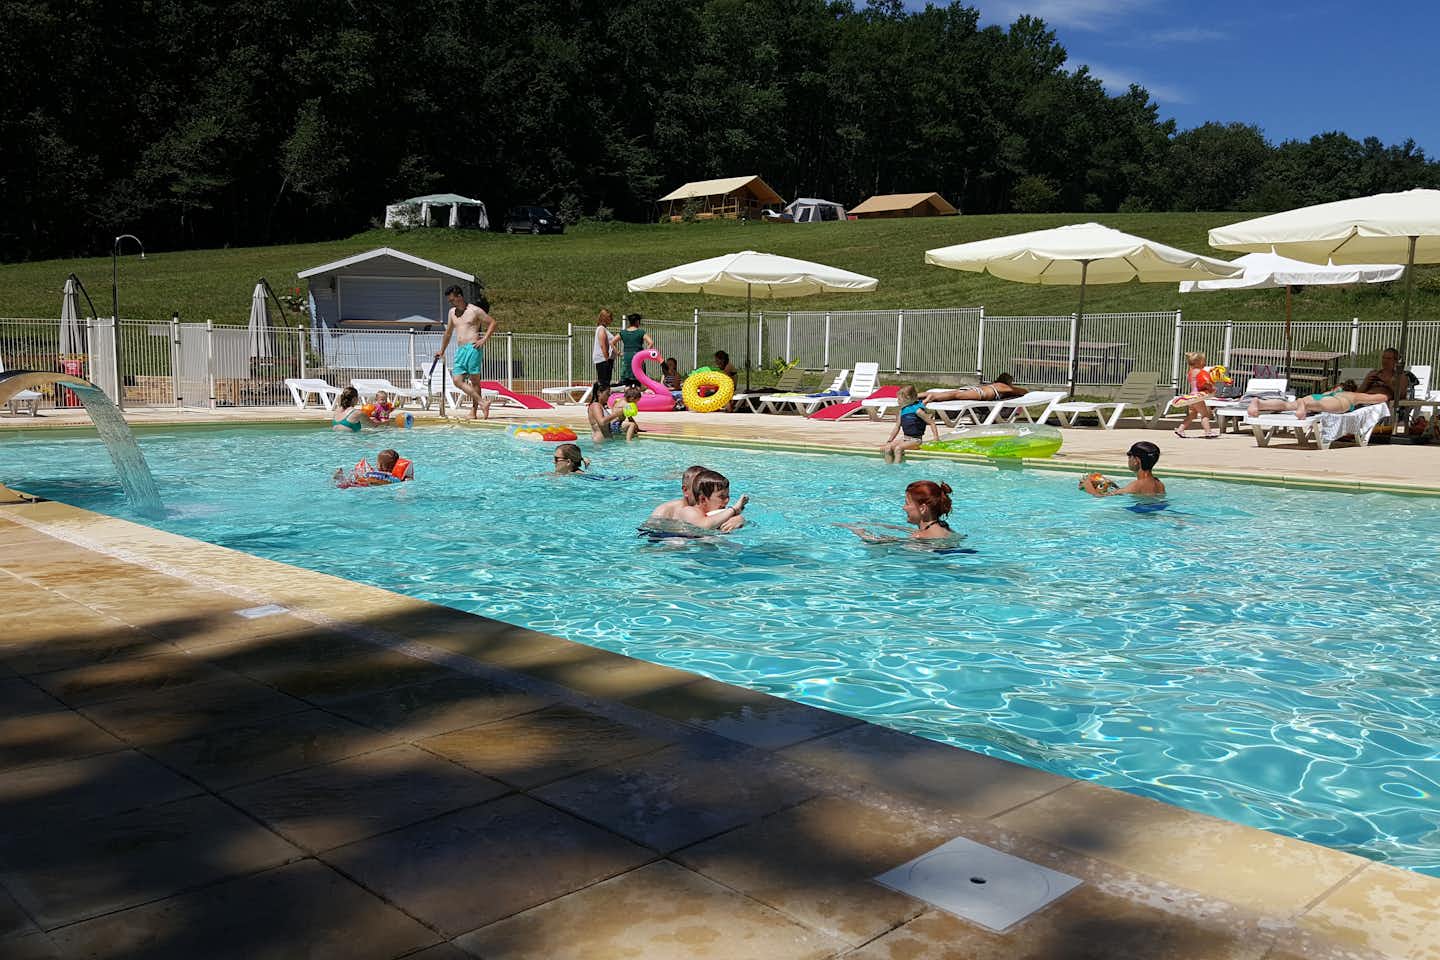 Domaine de Corneuil - Campingplatzanlage mit Pool und Liegestühlen in der Sonne